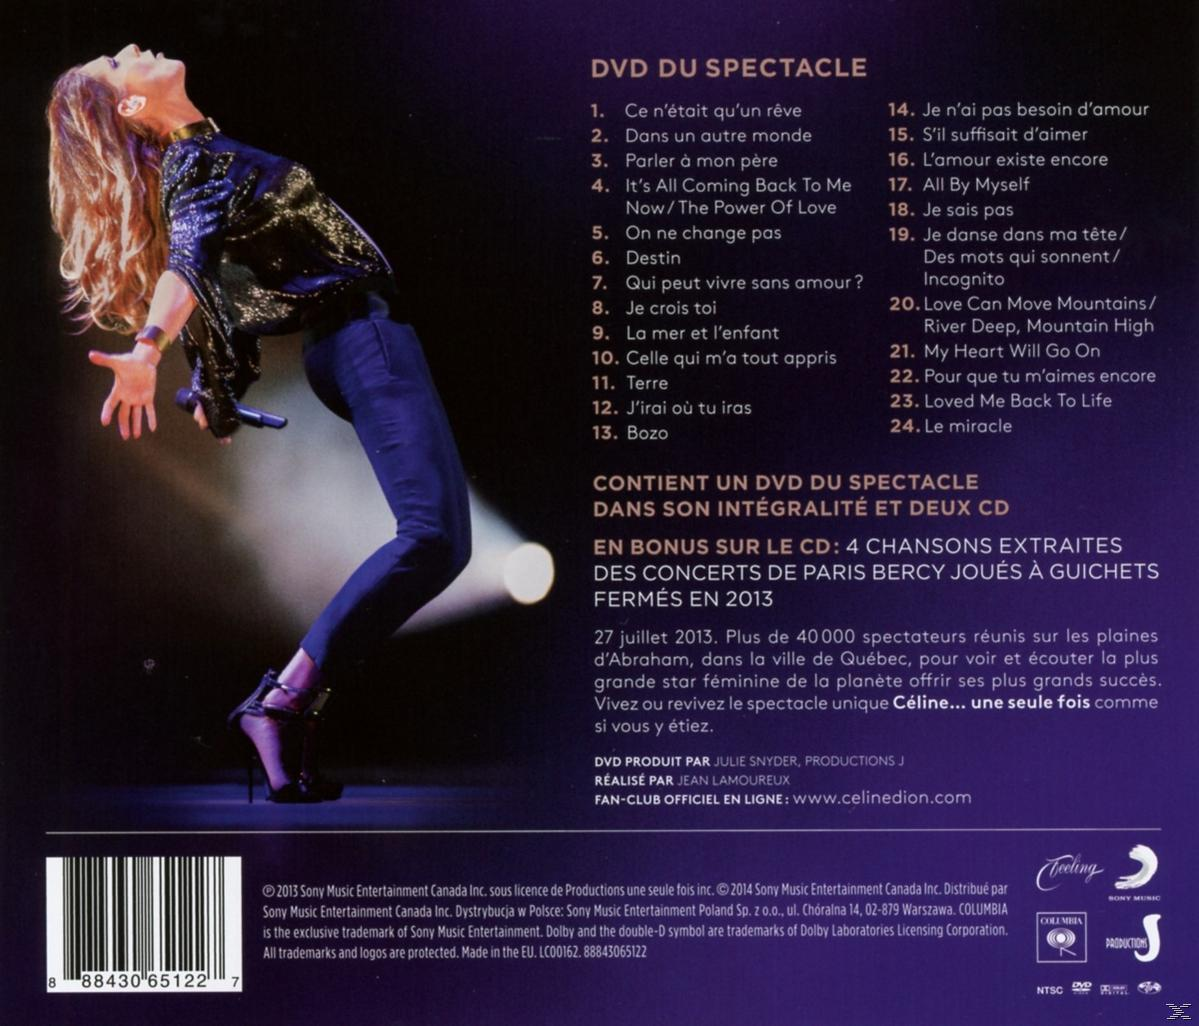 Céline Dion - Video) + 2013 DVD - (CD Fois/Live Seule Céline...Une